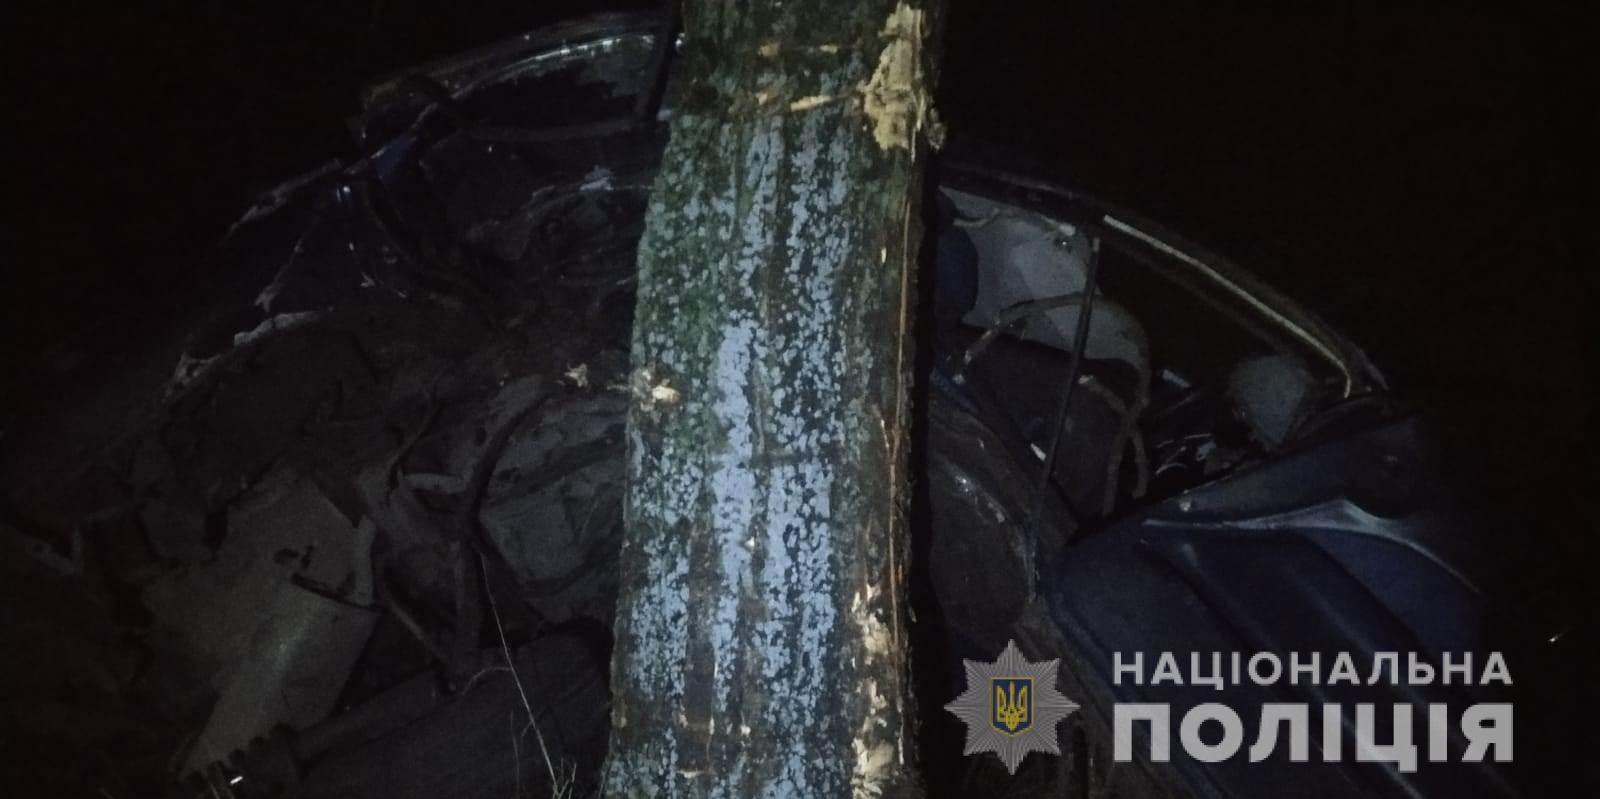 Влетел в дерево и погиб на месте: в полиции выясняют подробности смертельного ДТП в Белгород-Днестровском районе